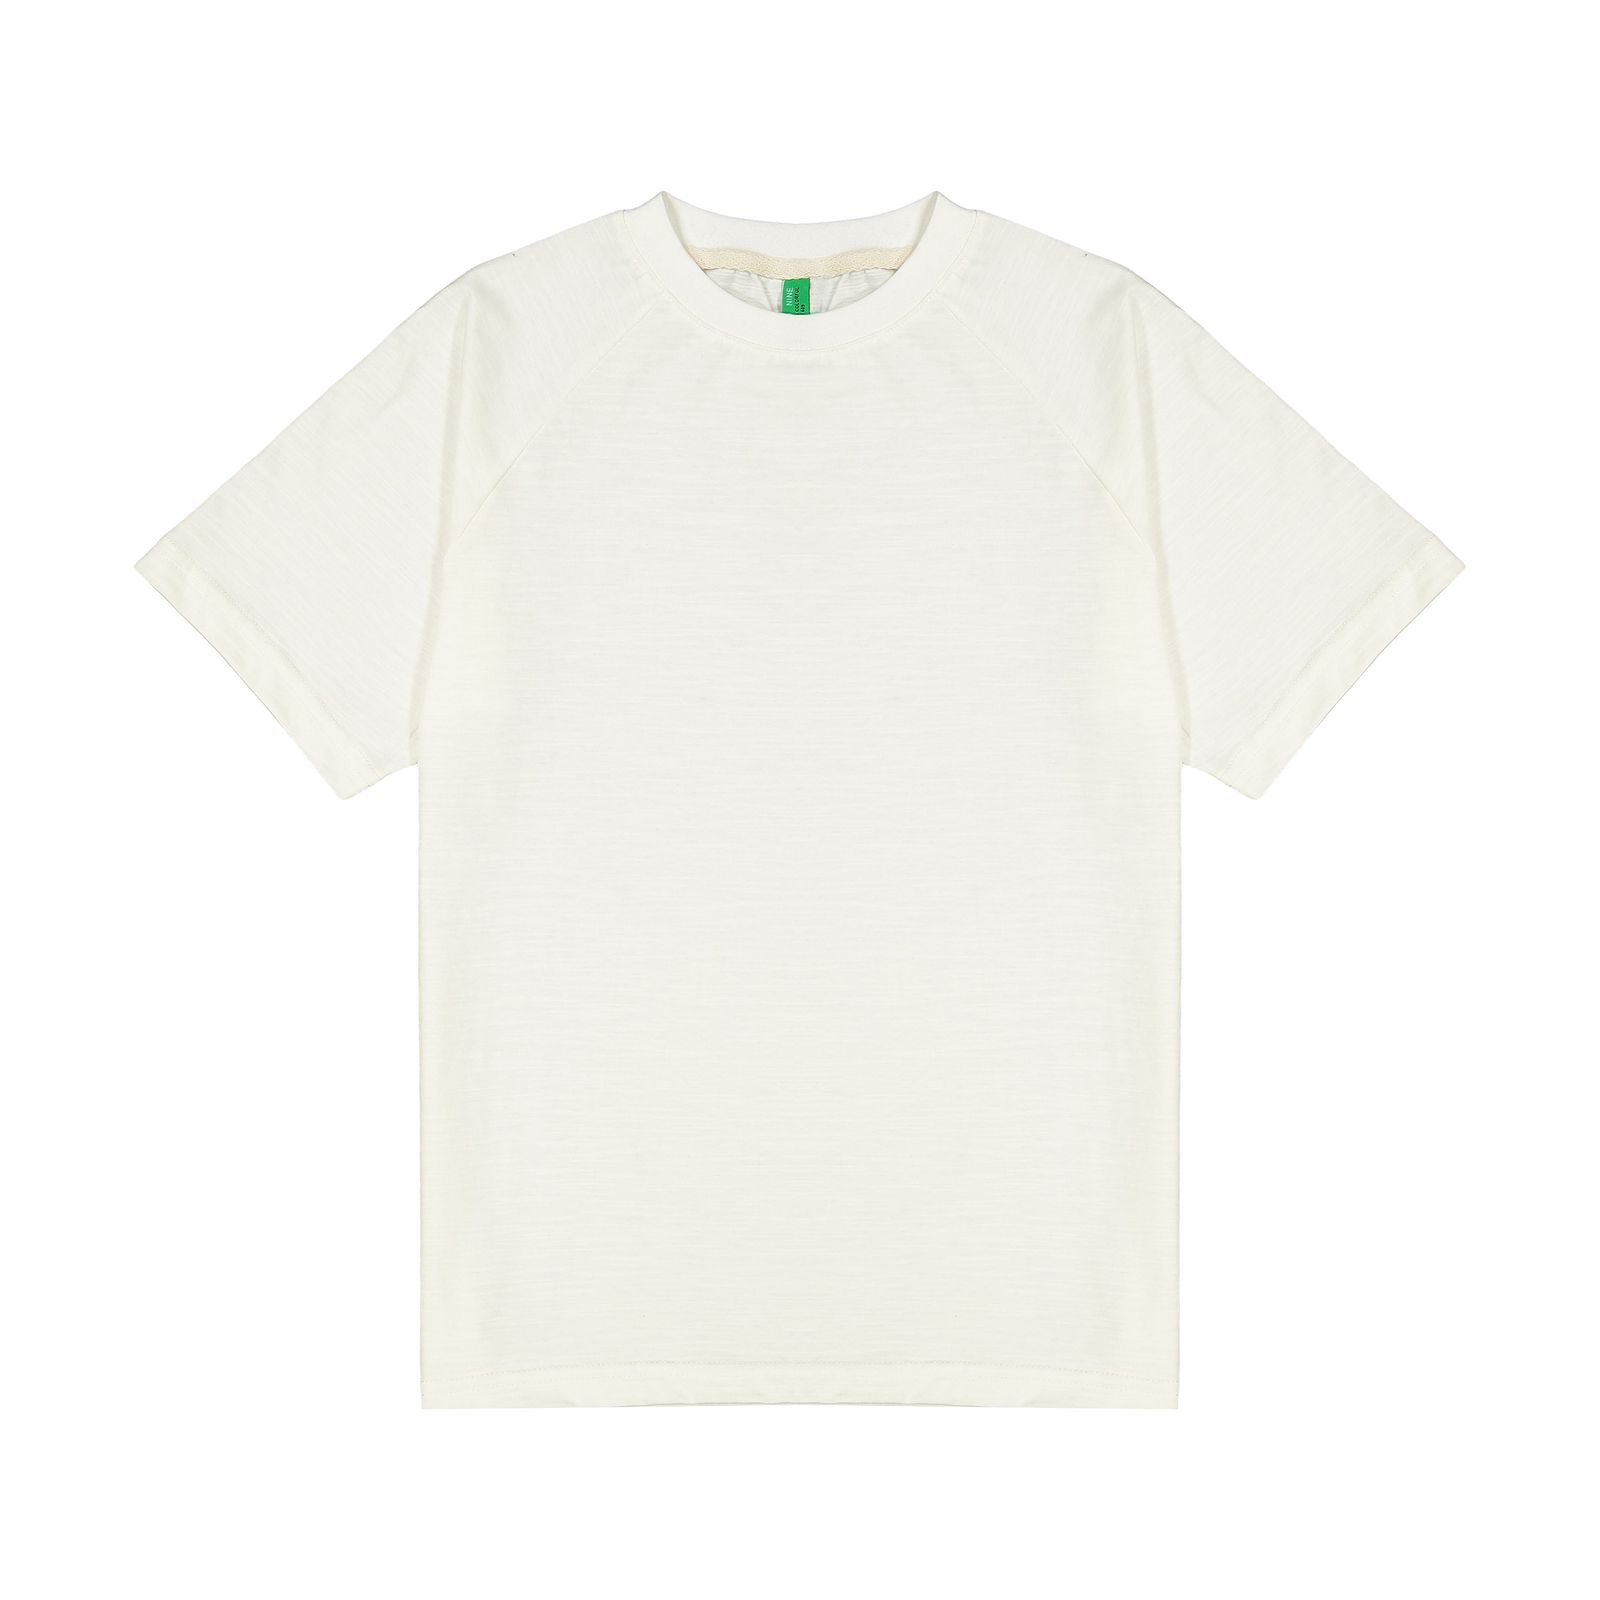 تی شرت بچگانه سیکس زیرو ناین مدل 1101-01 -  - 1